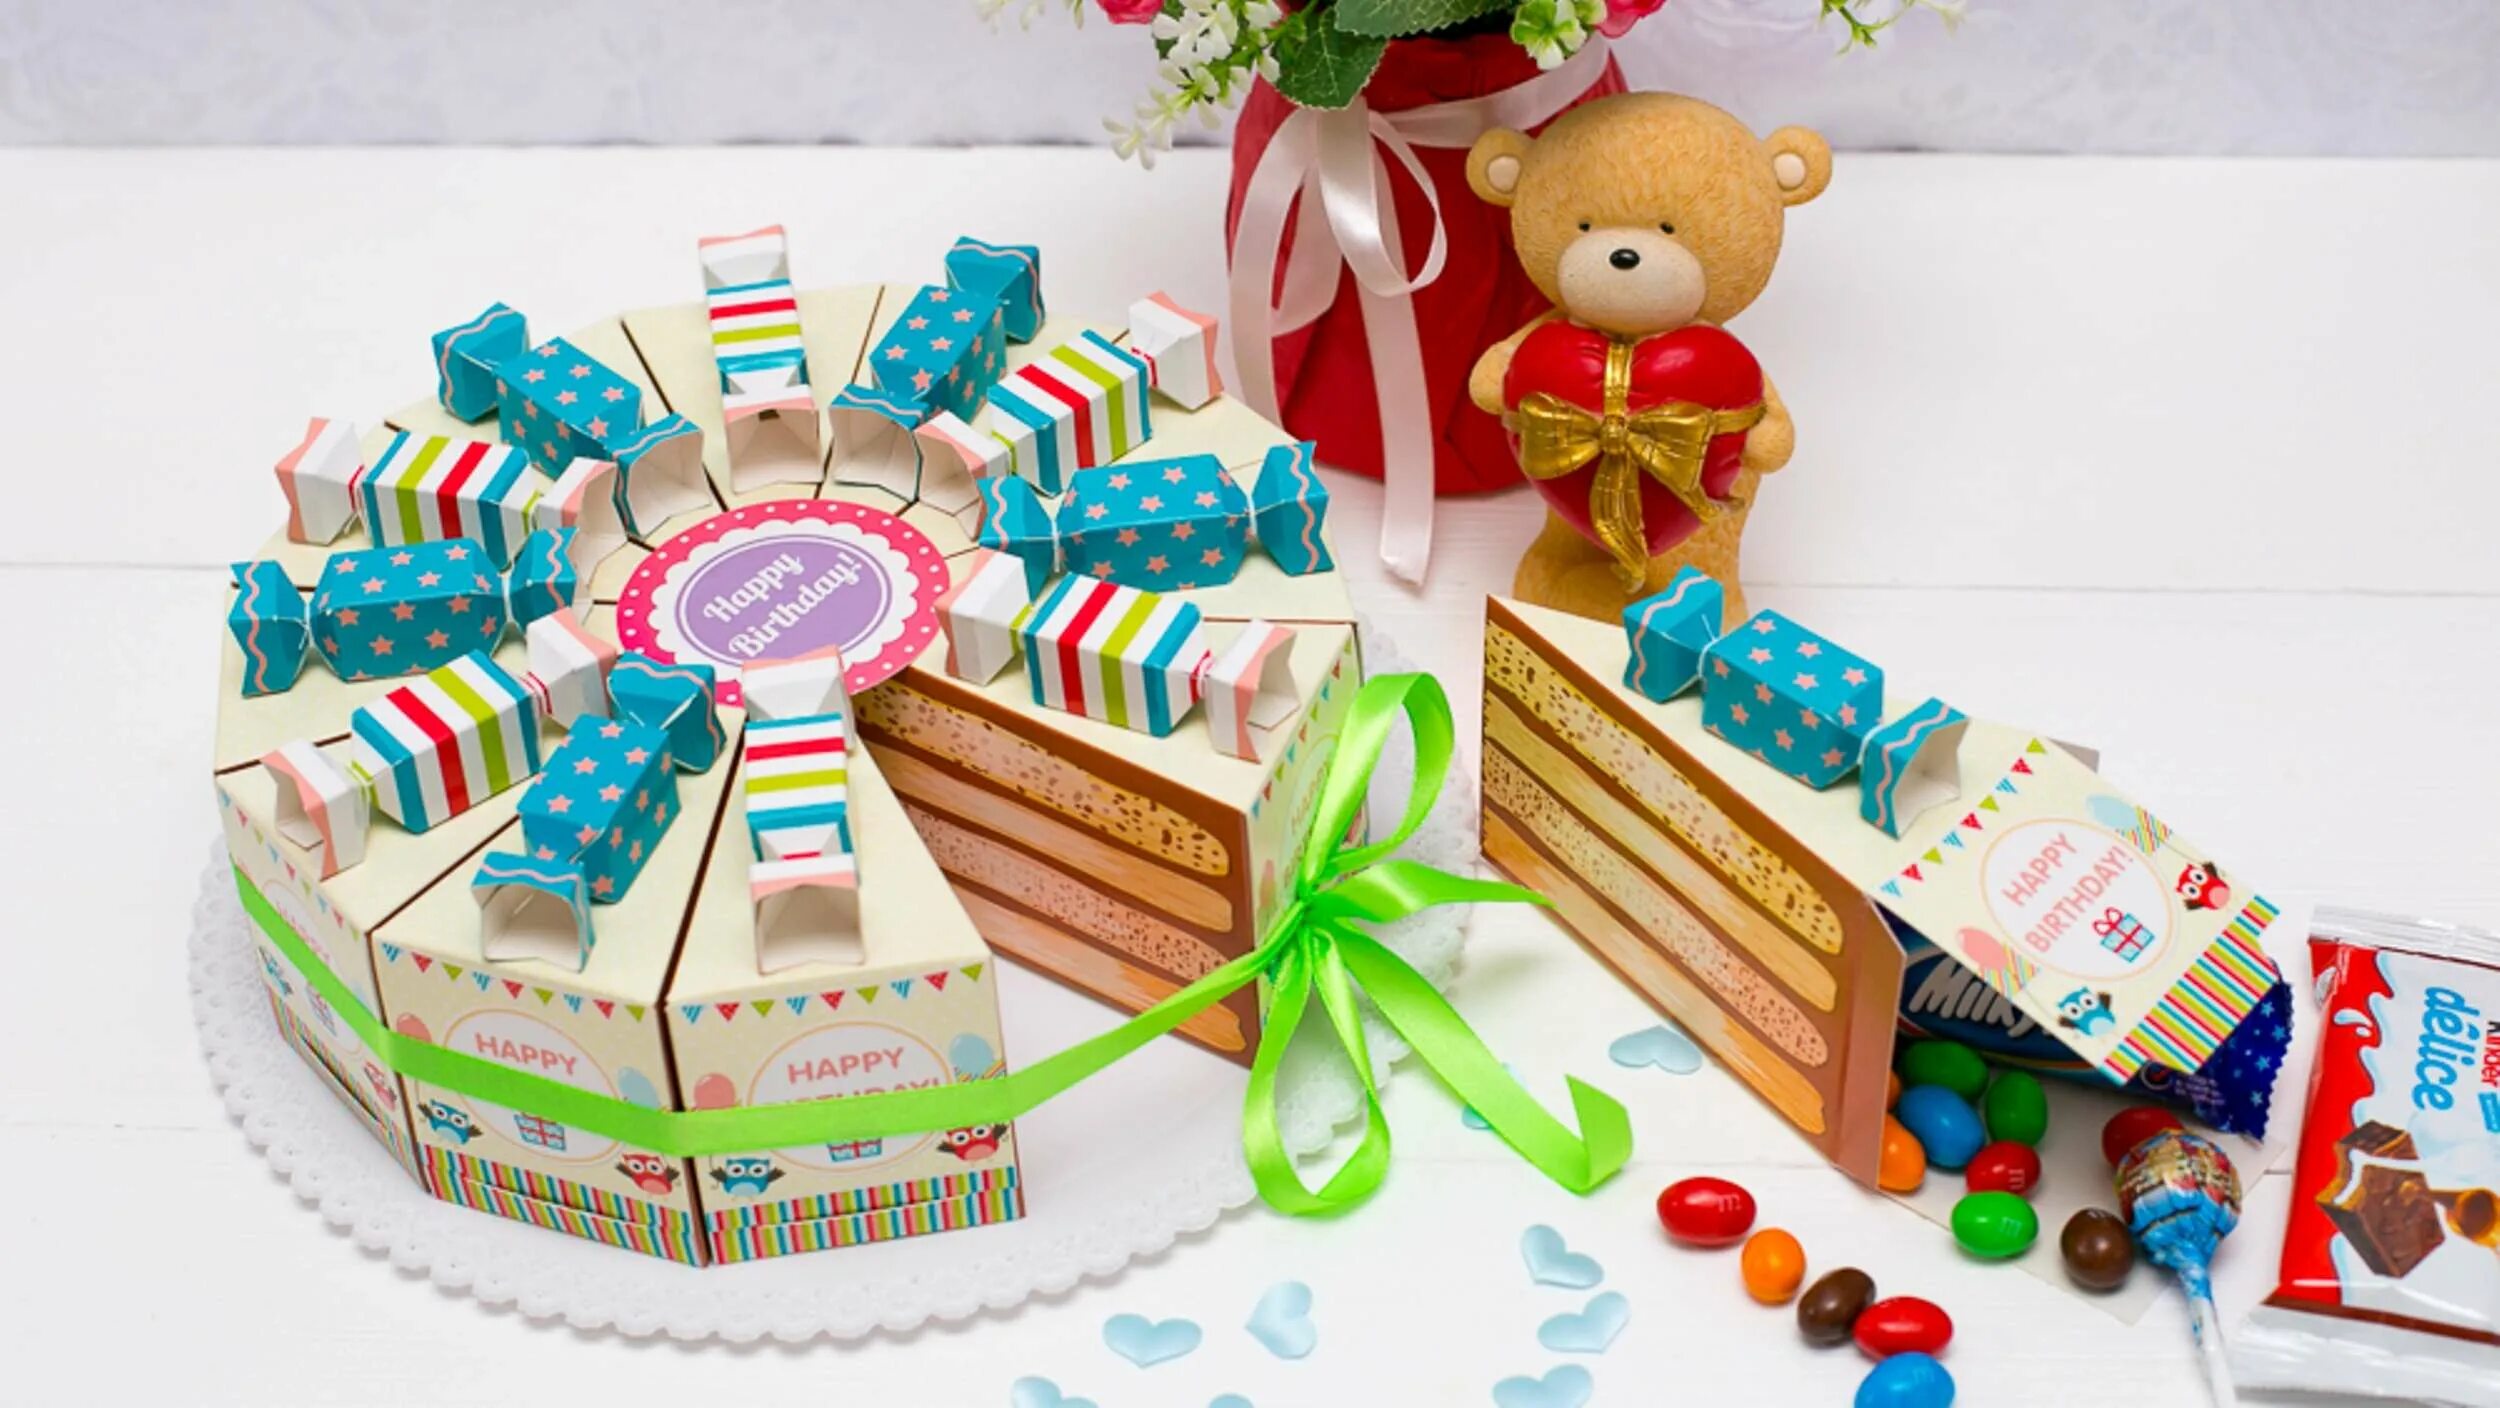 Торт подарок. Картонный торт. Торт бумажный с подарками. Пожелания в тортик из картона. Подарки на день рождения из картона